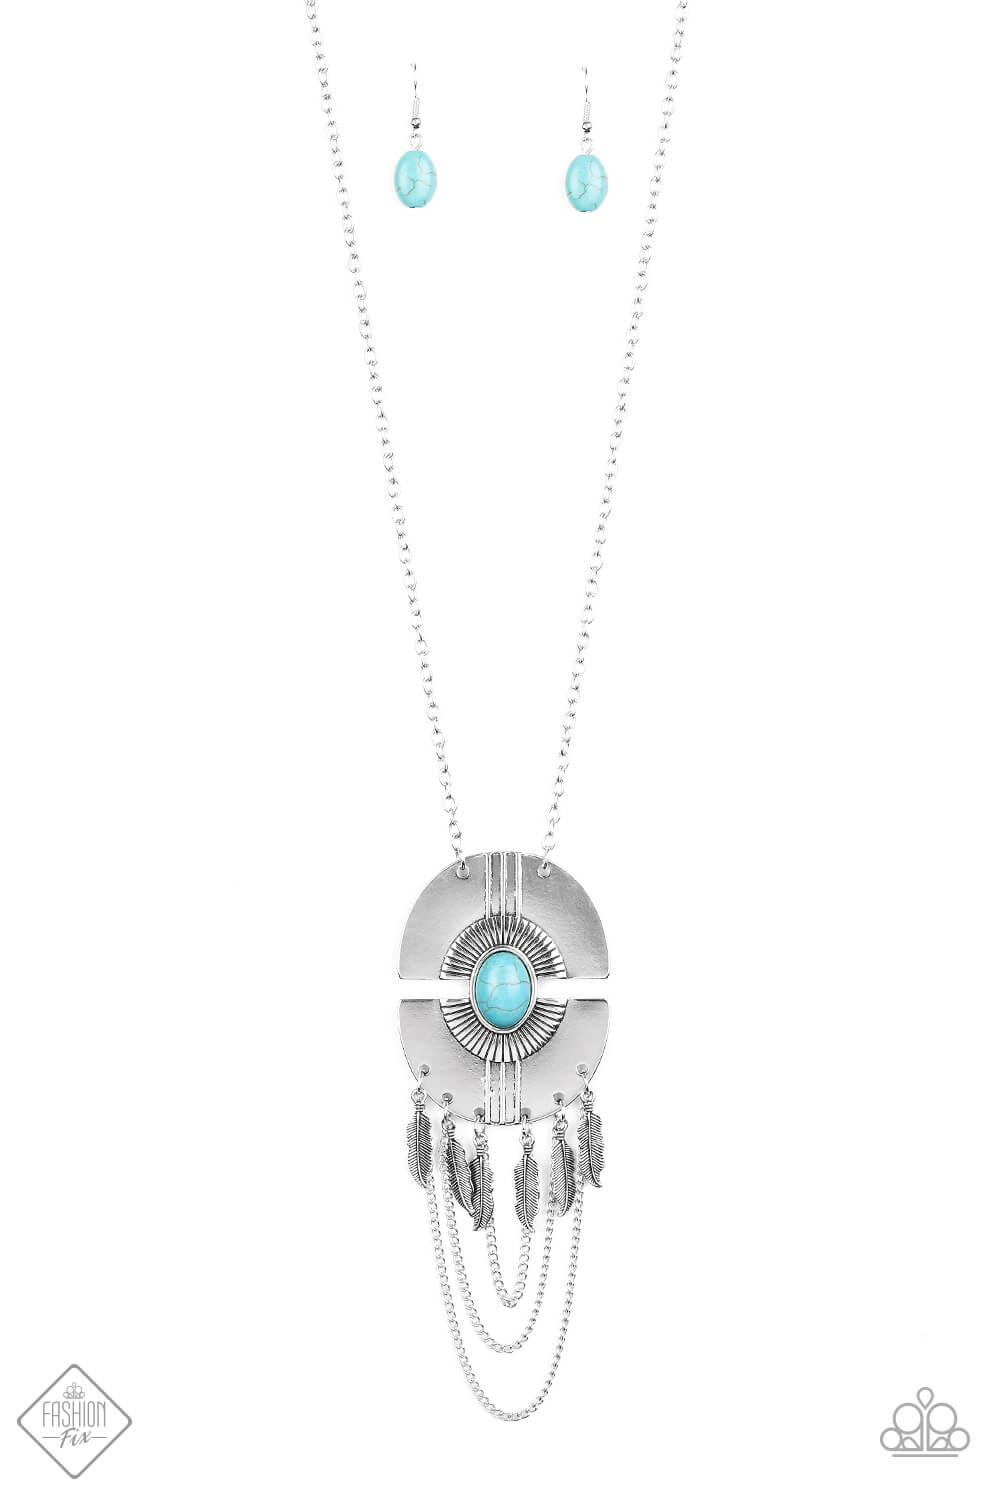 Desert Culture - Blue Stone Necklace Set - Princess Glam Shop